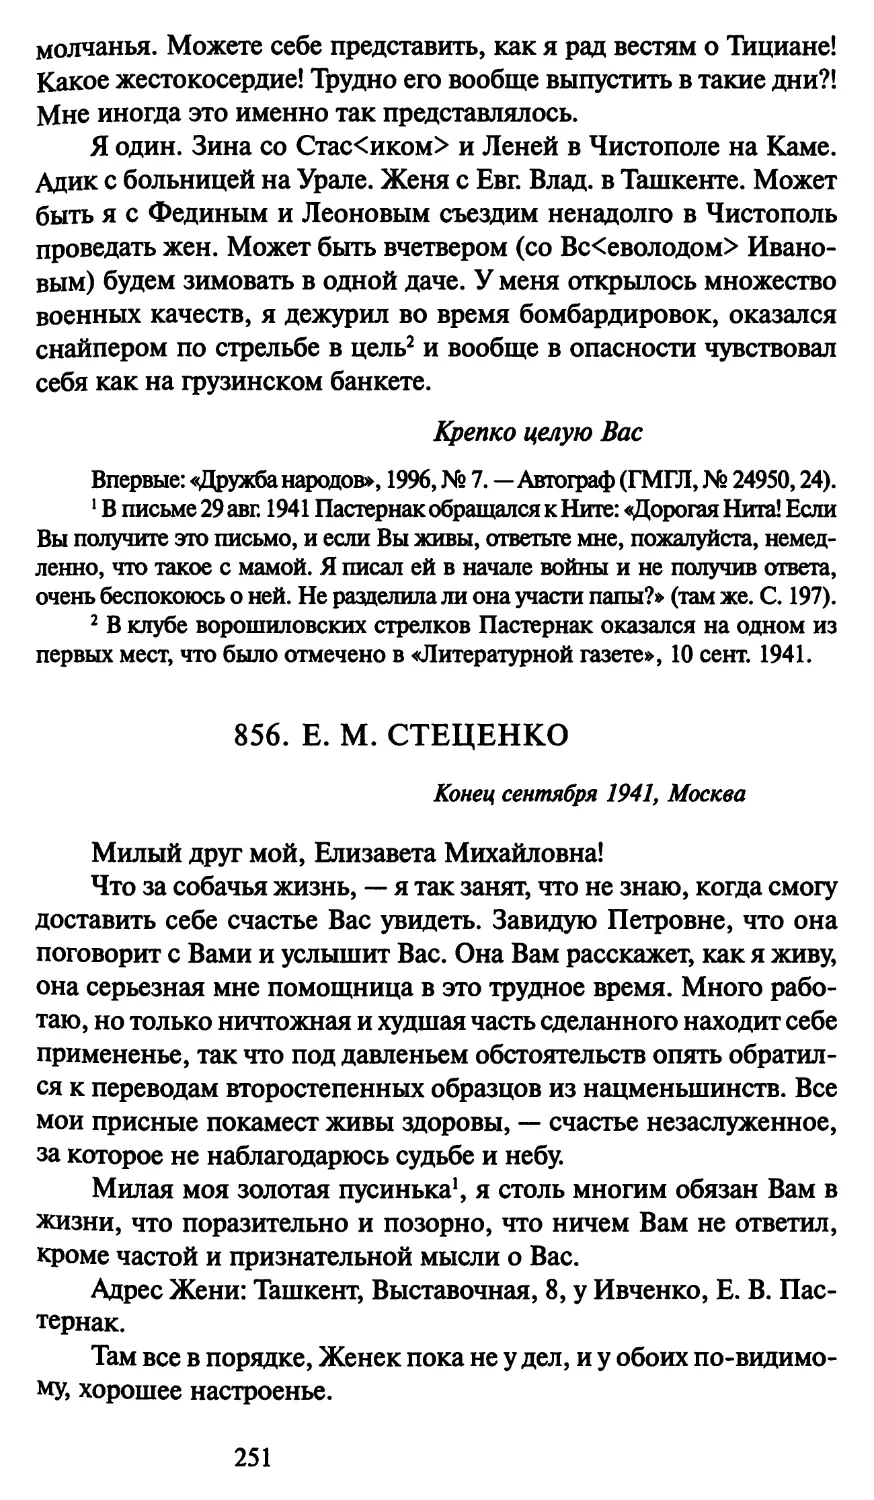 856. Е. М. Стеценко конец сентября 1941